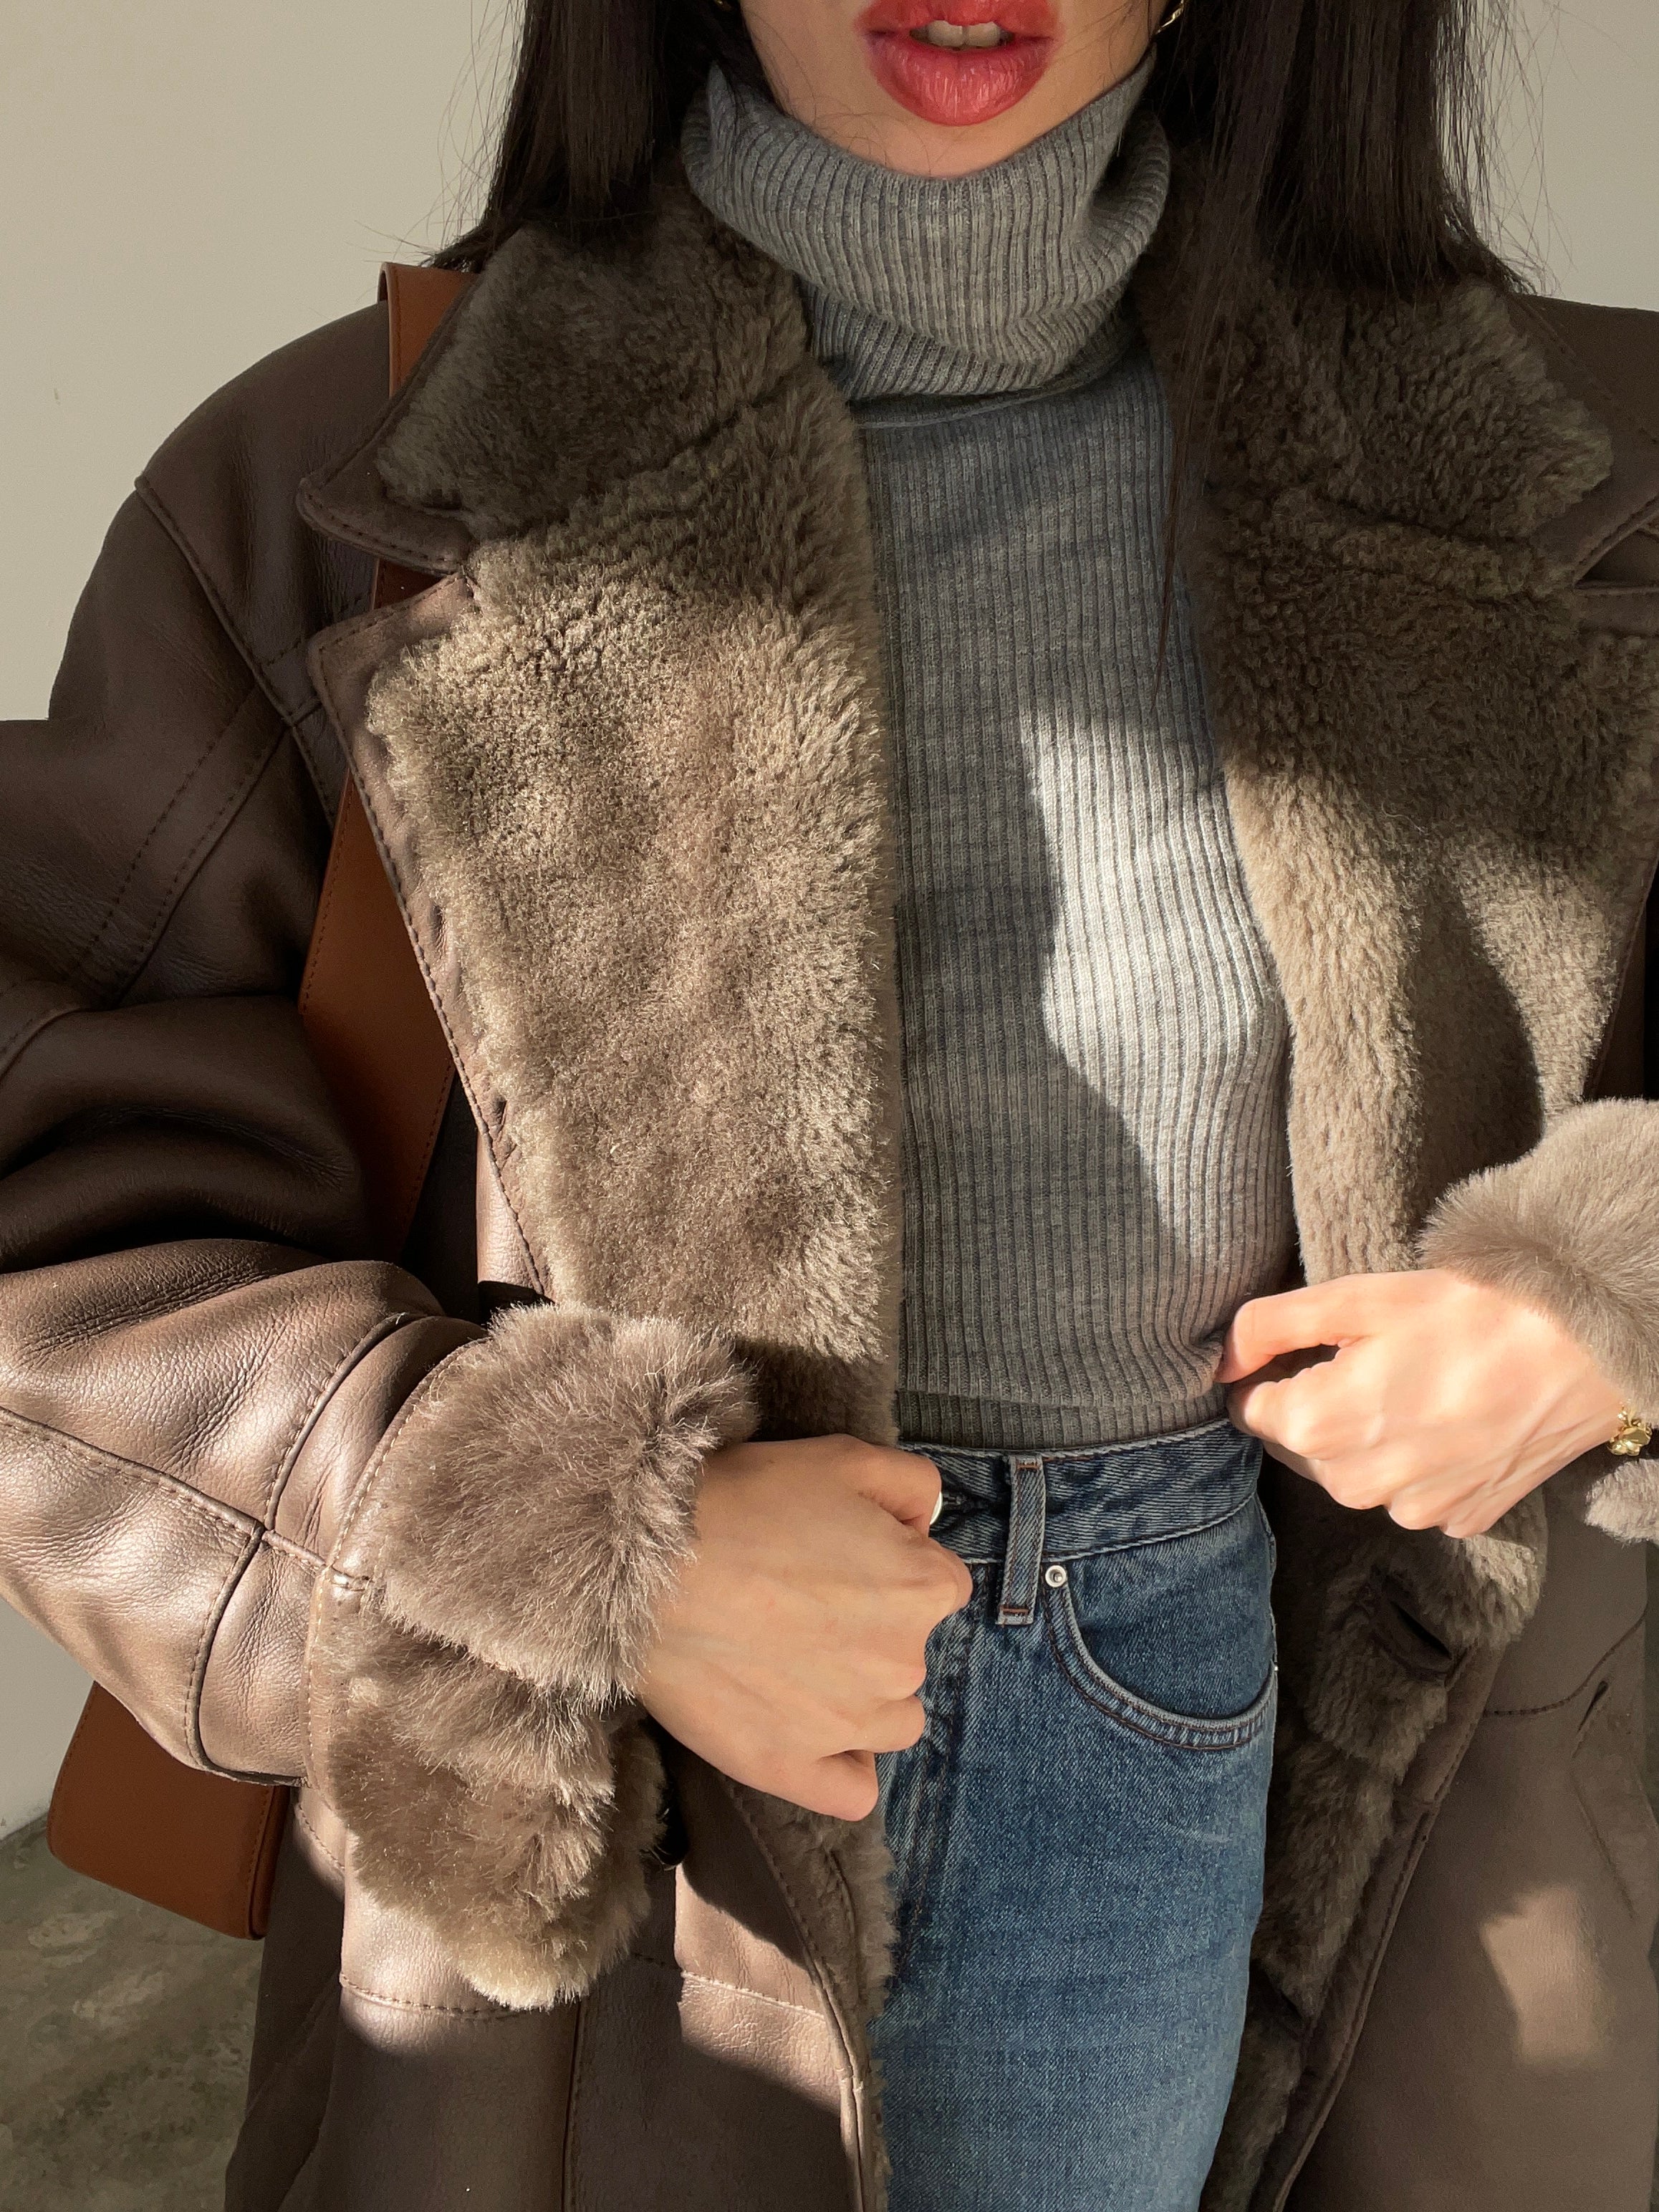 Vintage shearling coat